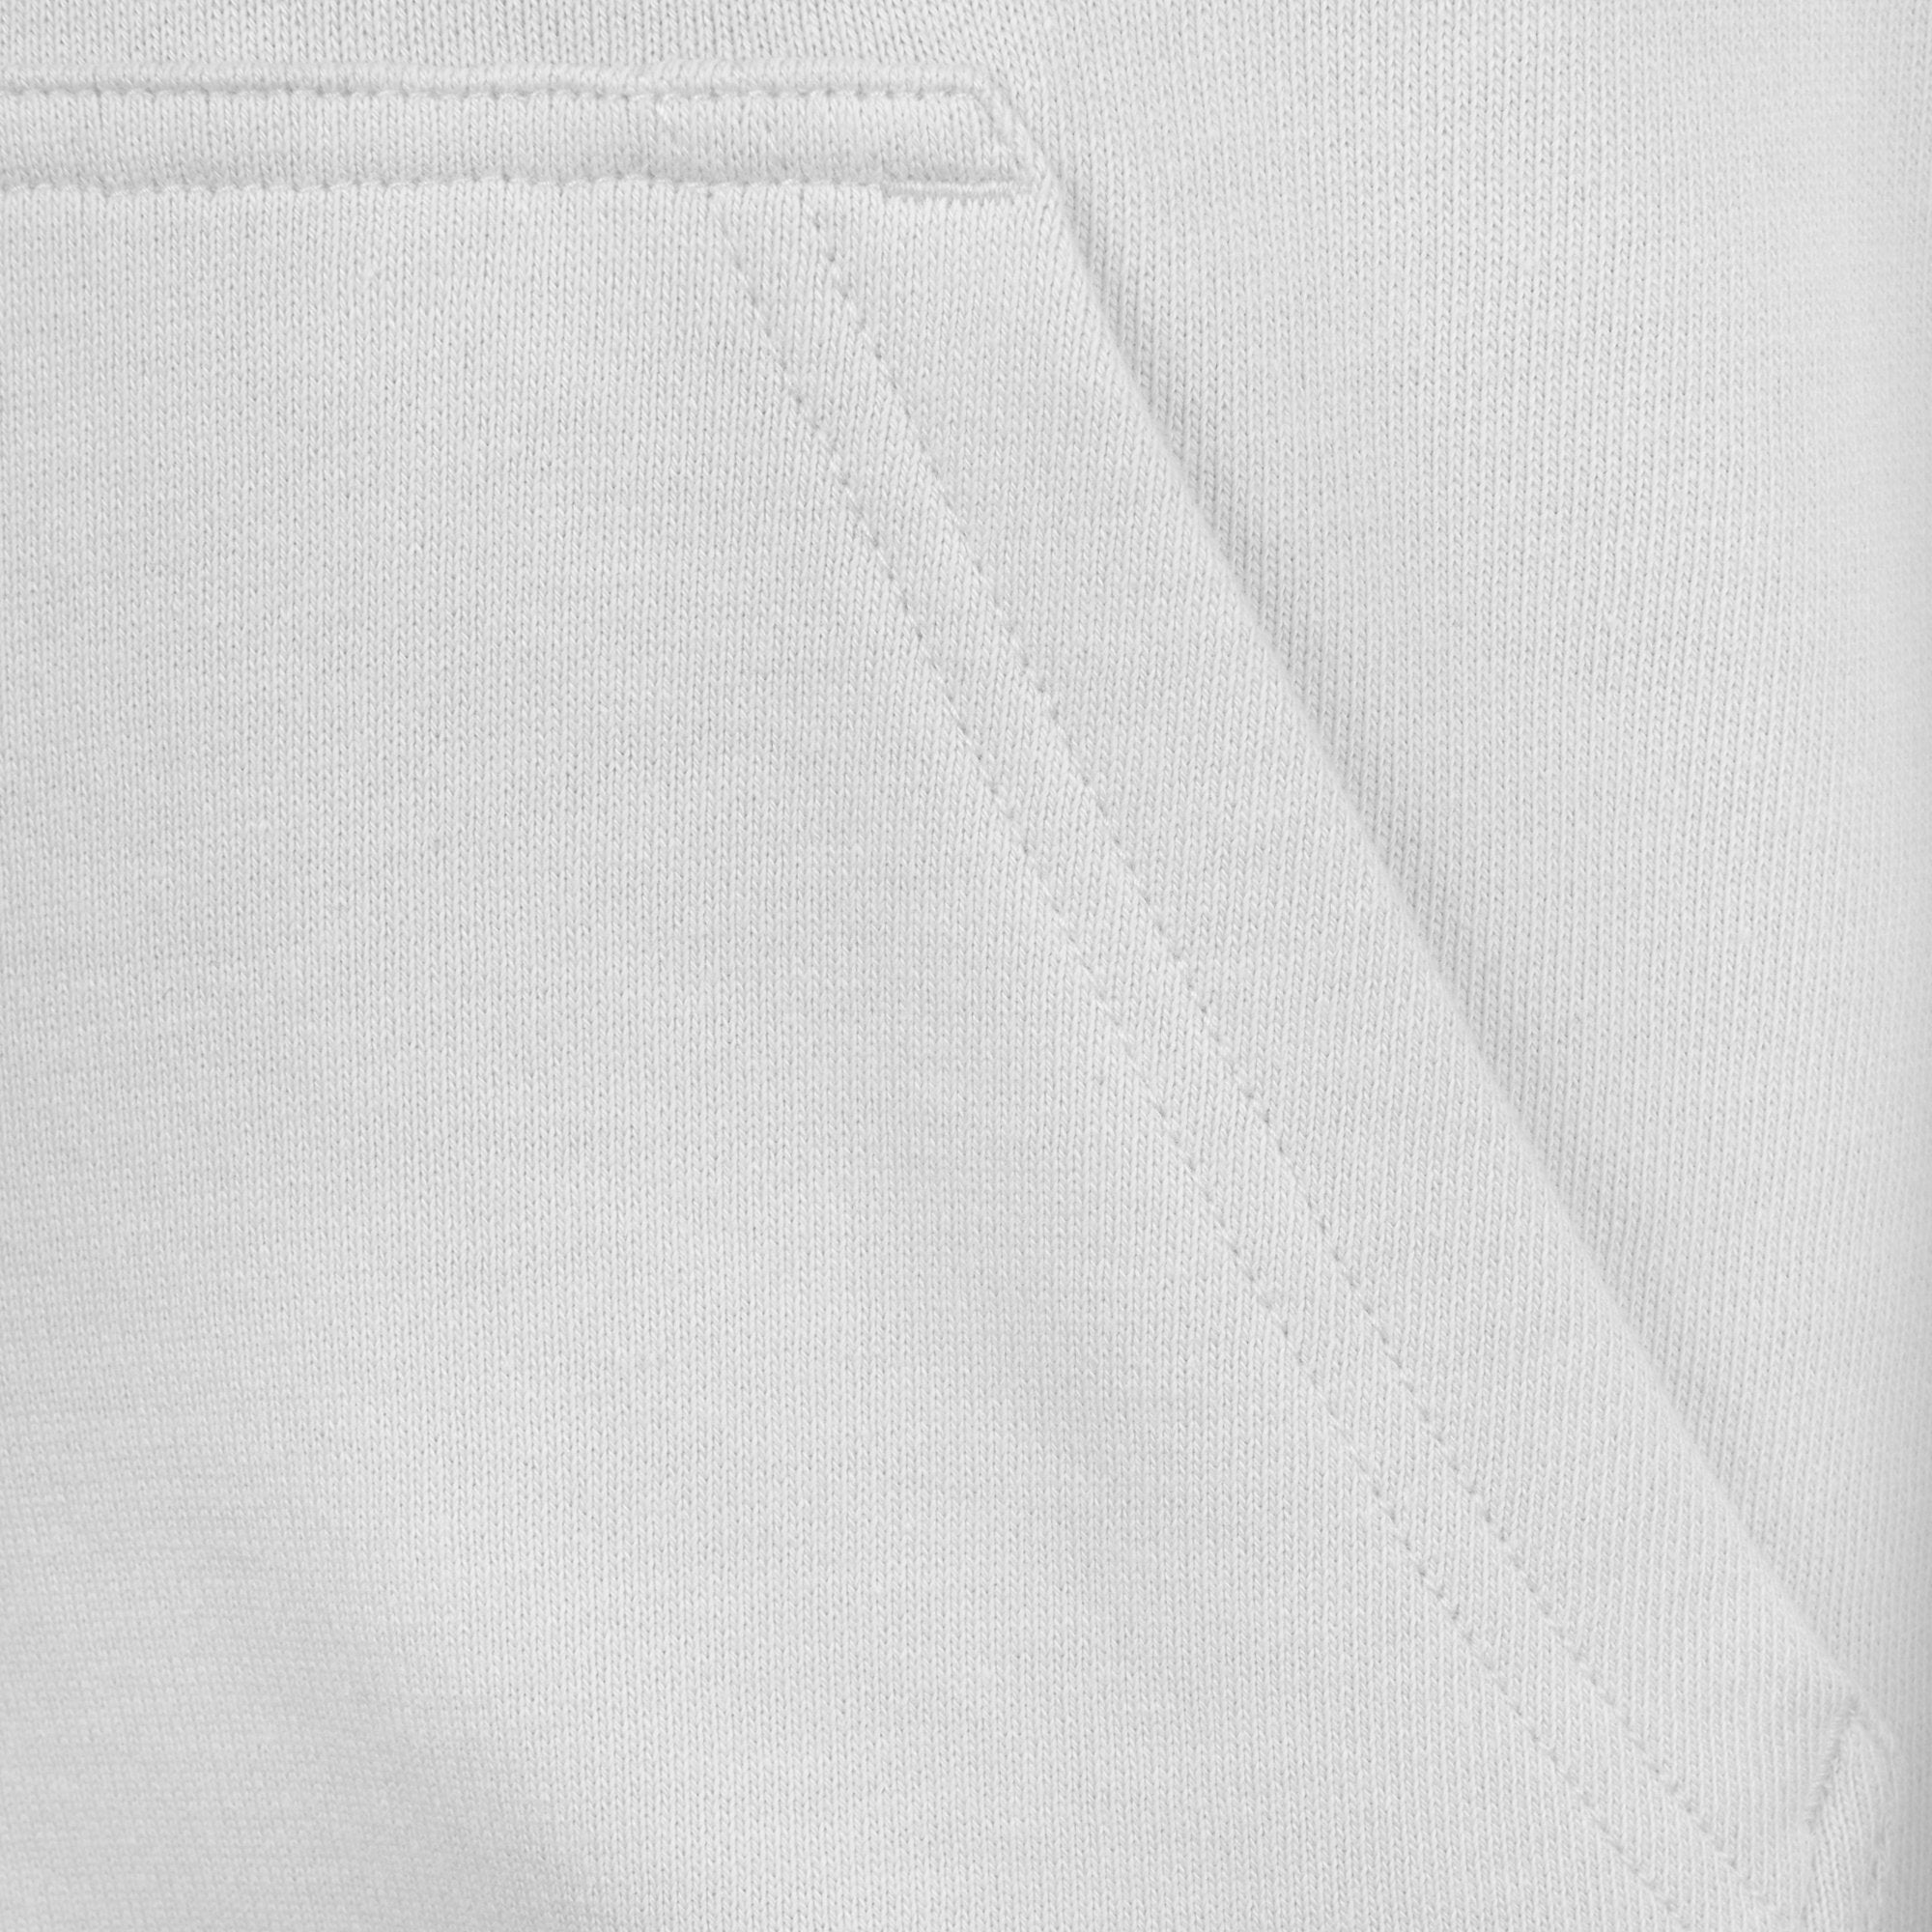 Jongens CLASSIC OTH HOODIE LB van Lyle & Scott in de kleur Bright White in maat 170-176.